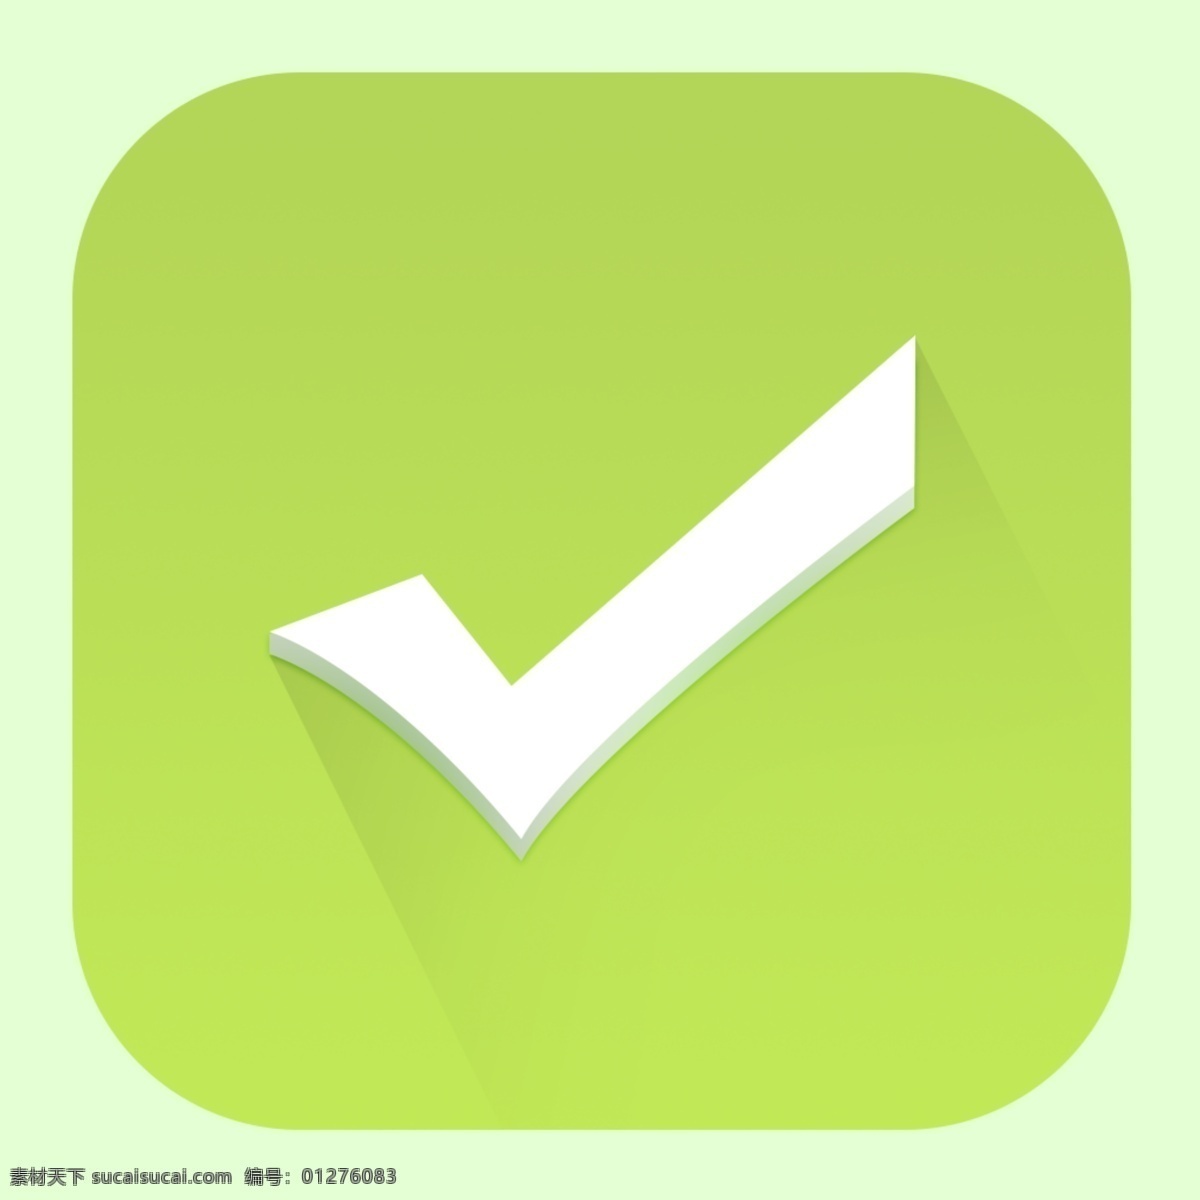 绿色 提示 正确 icon 图标 图标设计 icon设计 icon图标 网页图标 正确图标 正确icon 对图标 对icon 提示图标 提示icon